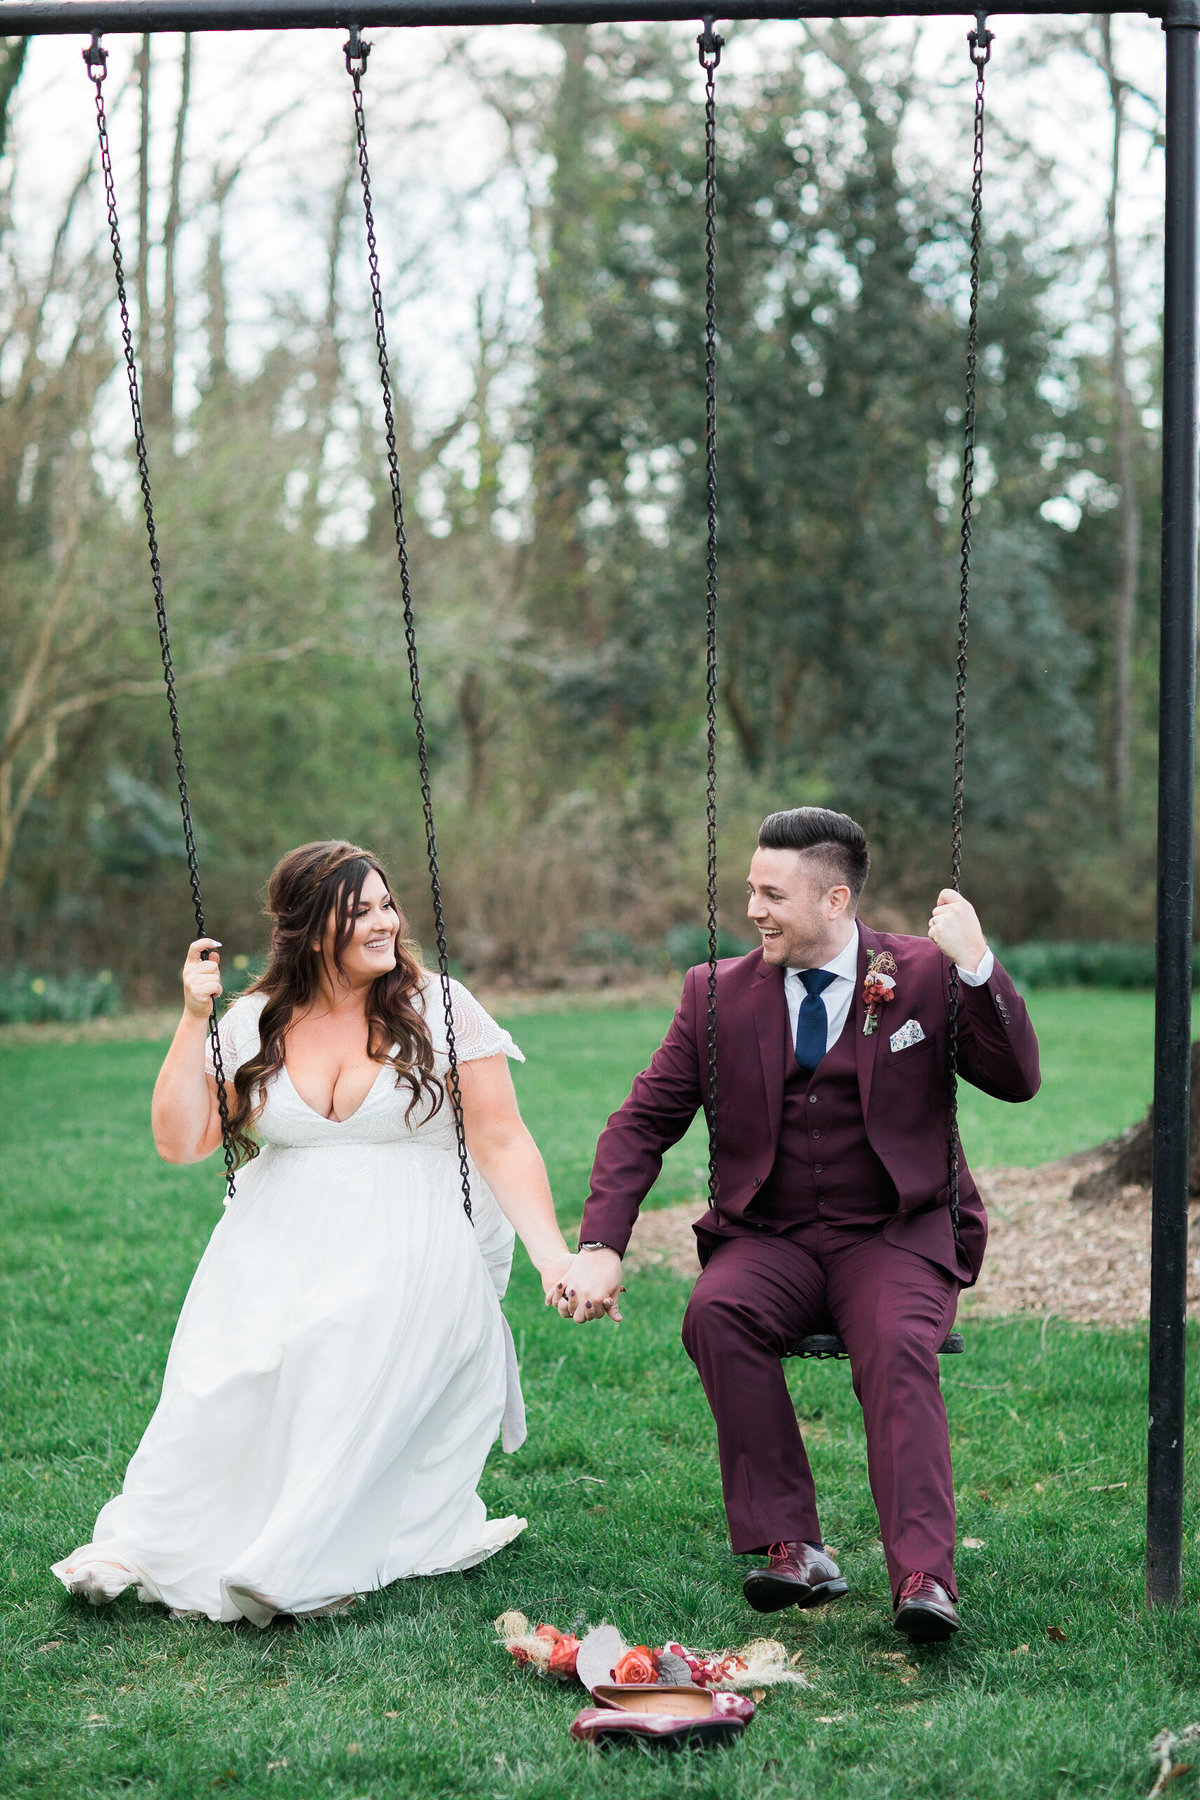 Wedding Photographer, couple swinging together